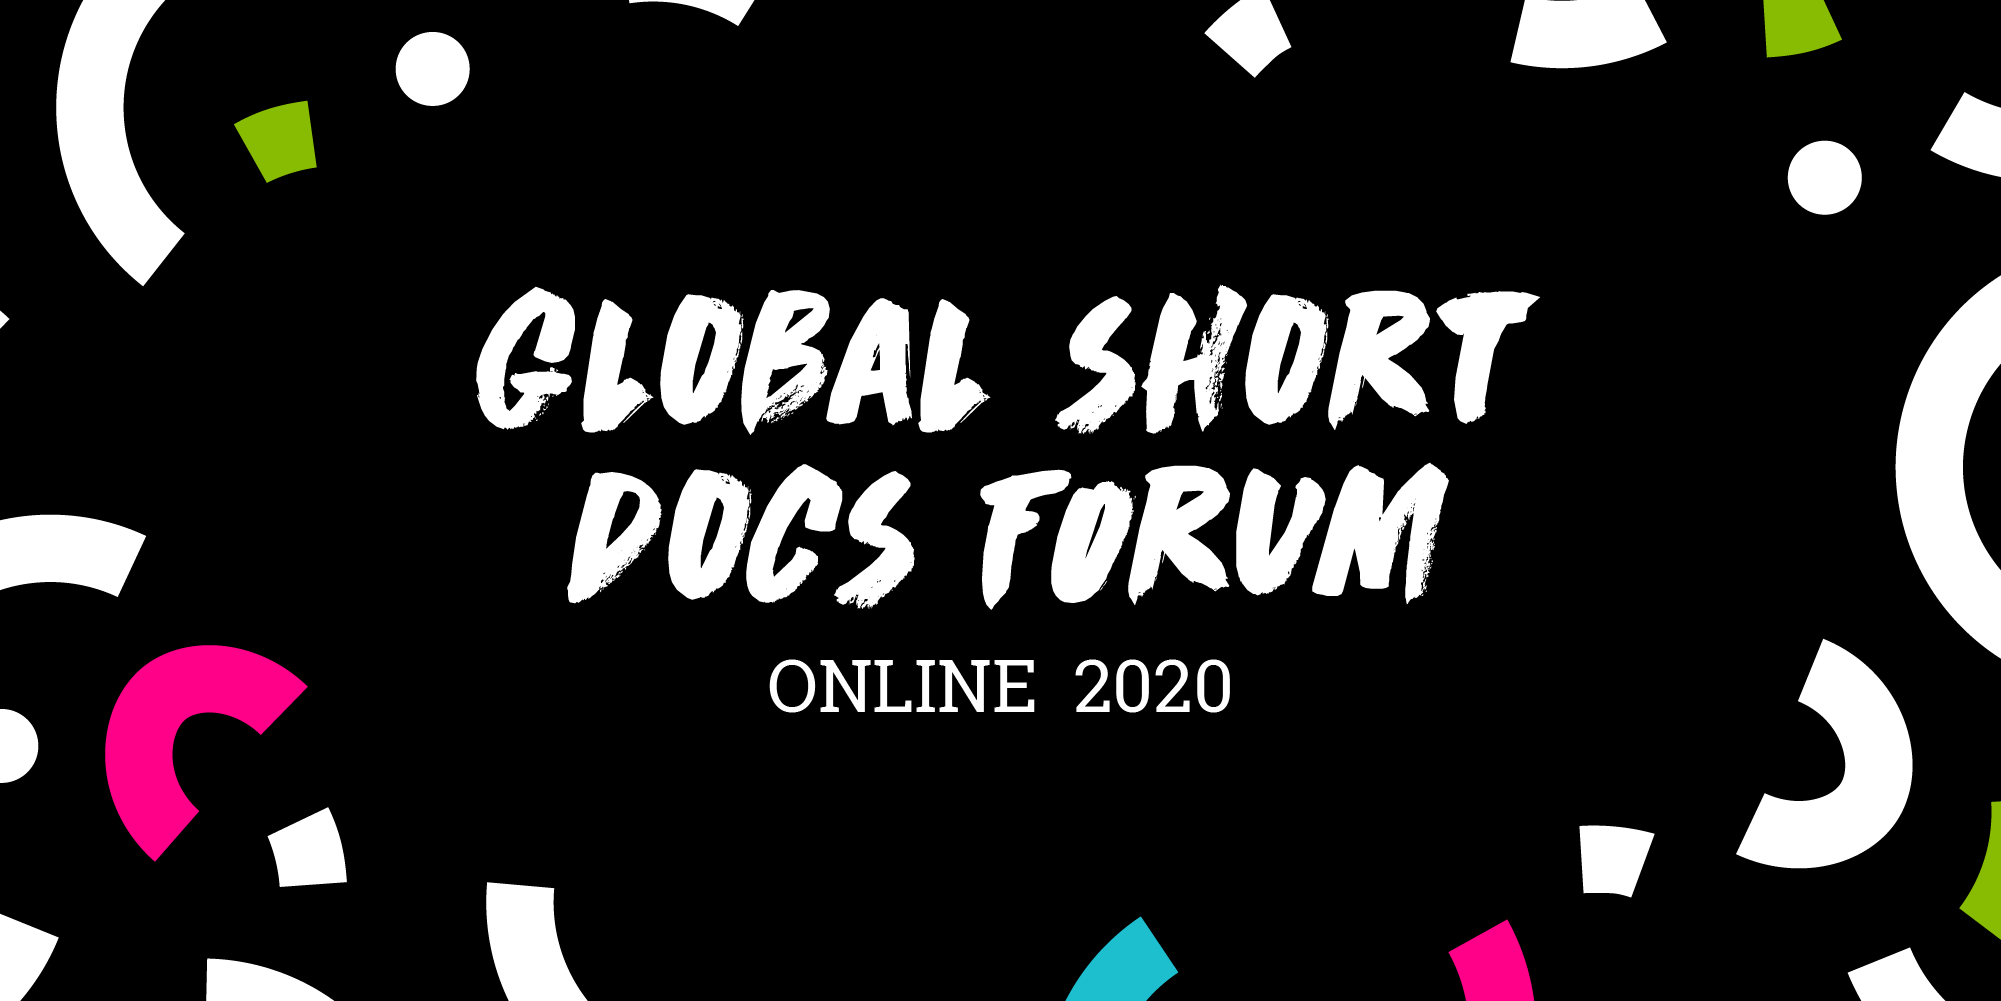 One World Media Global Short Docs Forum 2020 for Short Documentary Filmmakers